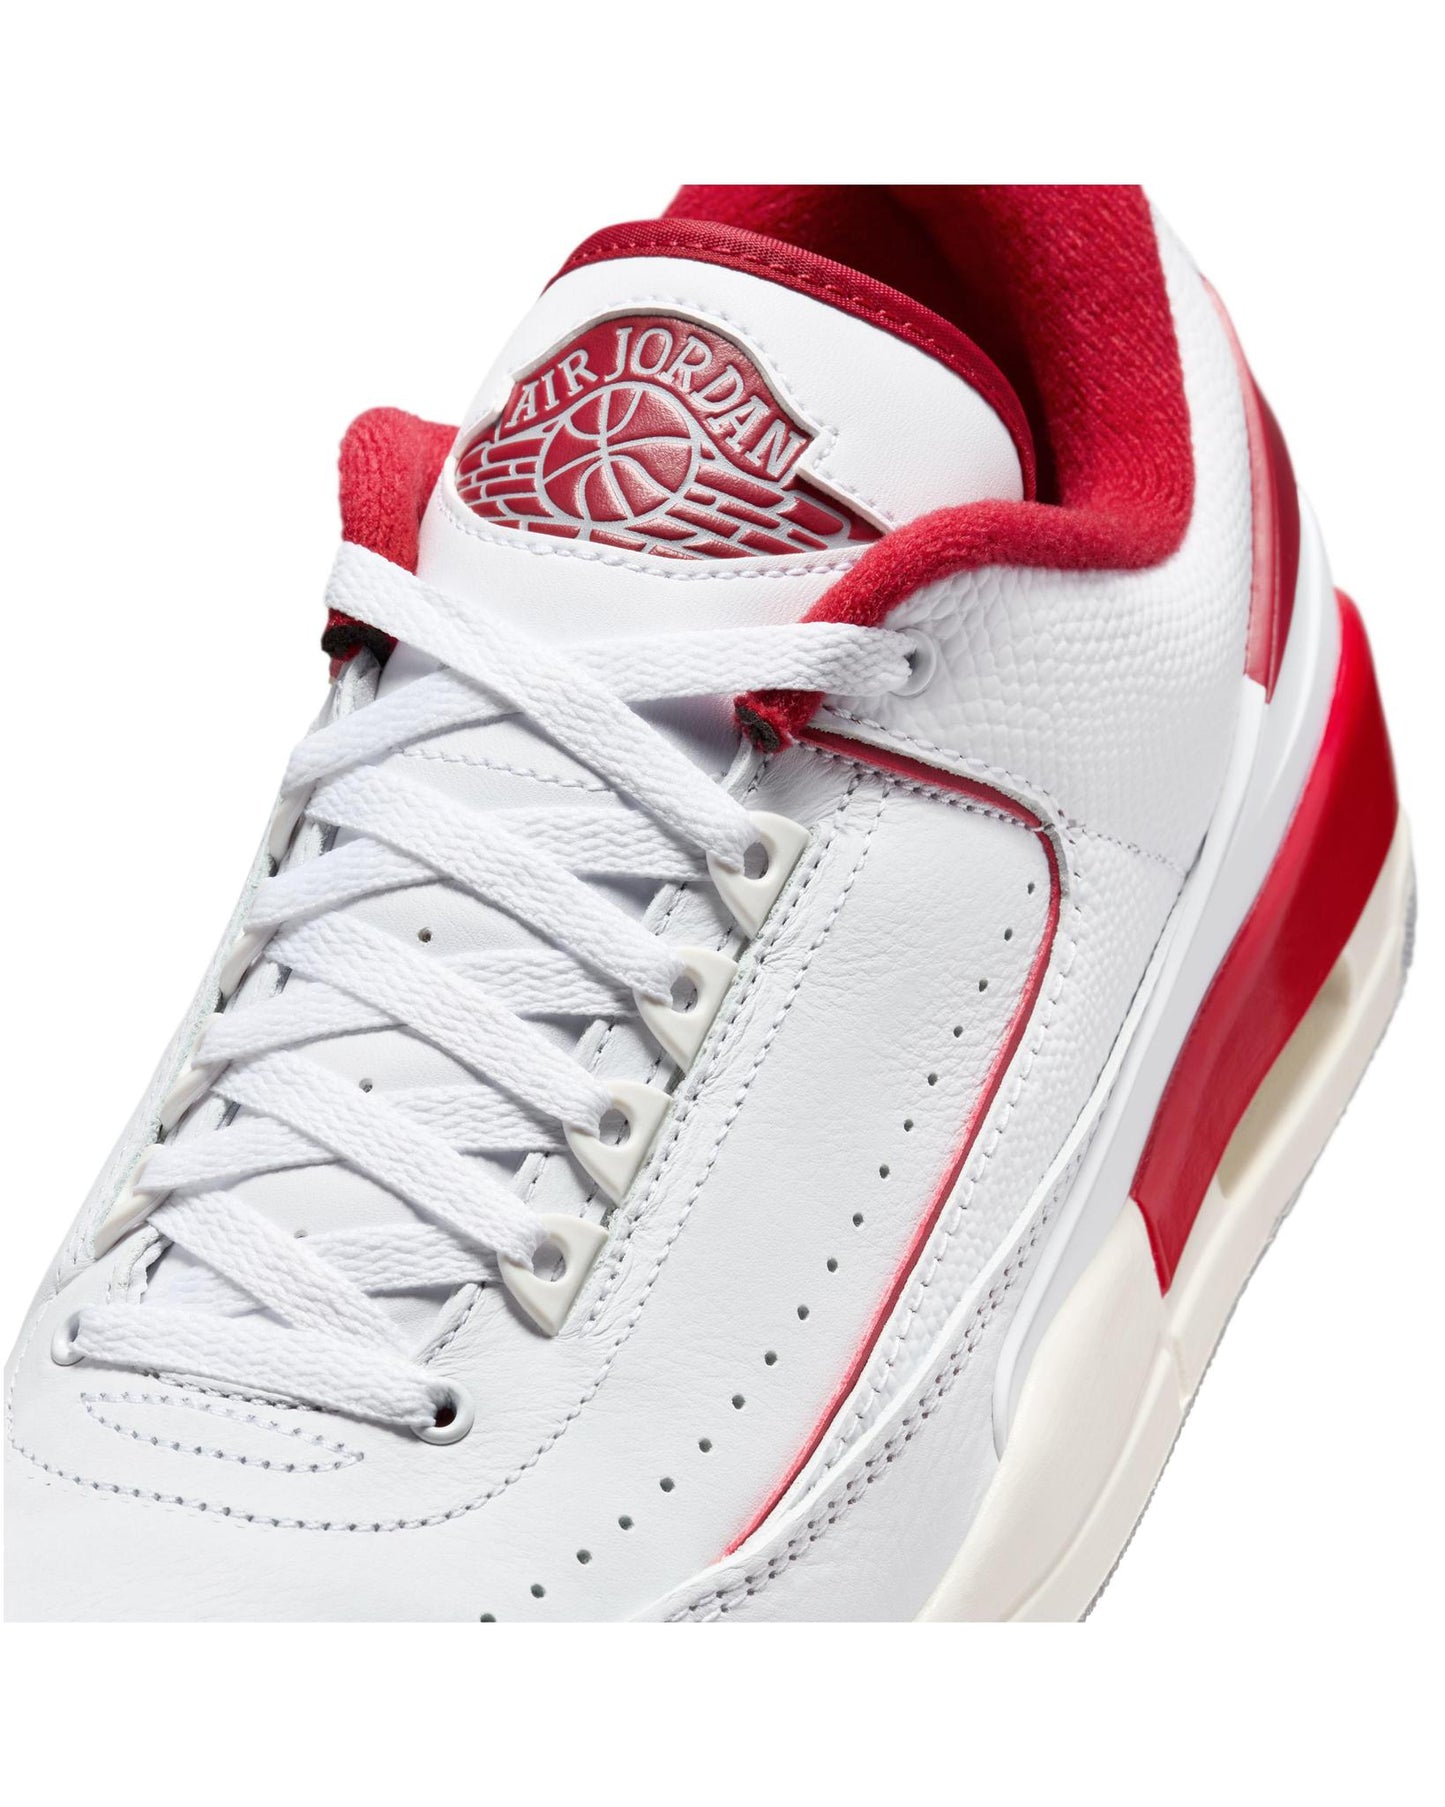 
                    
                      Jordan 2/3 "White Varsity Red"
                    
                  